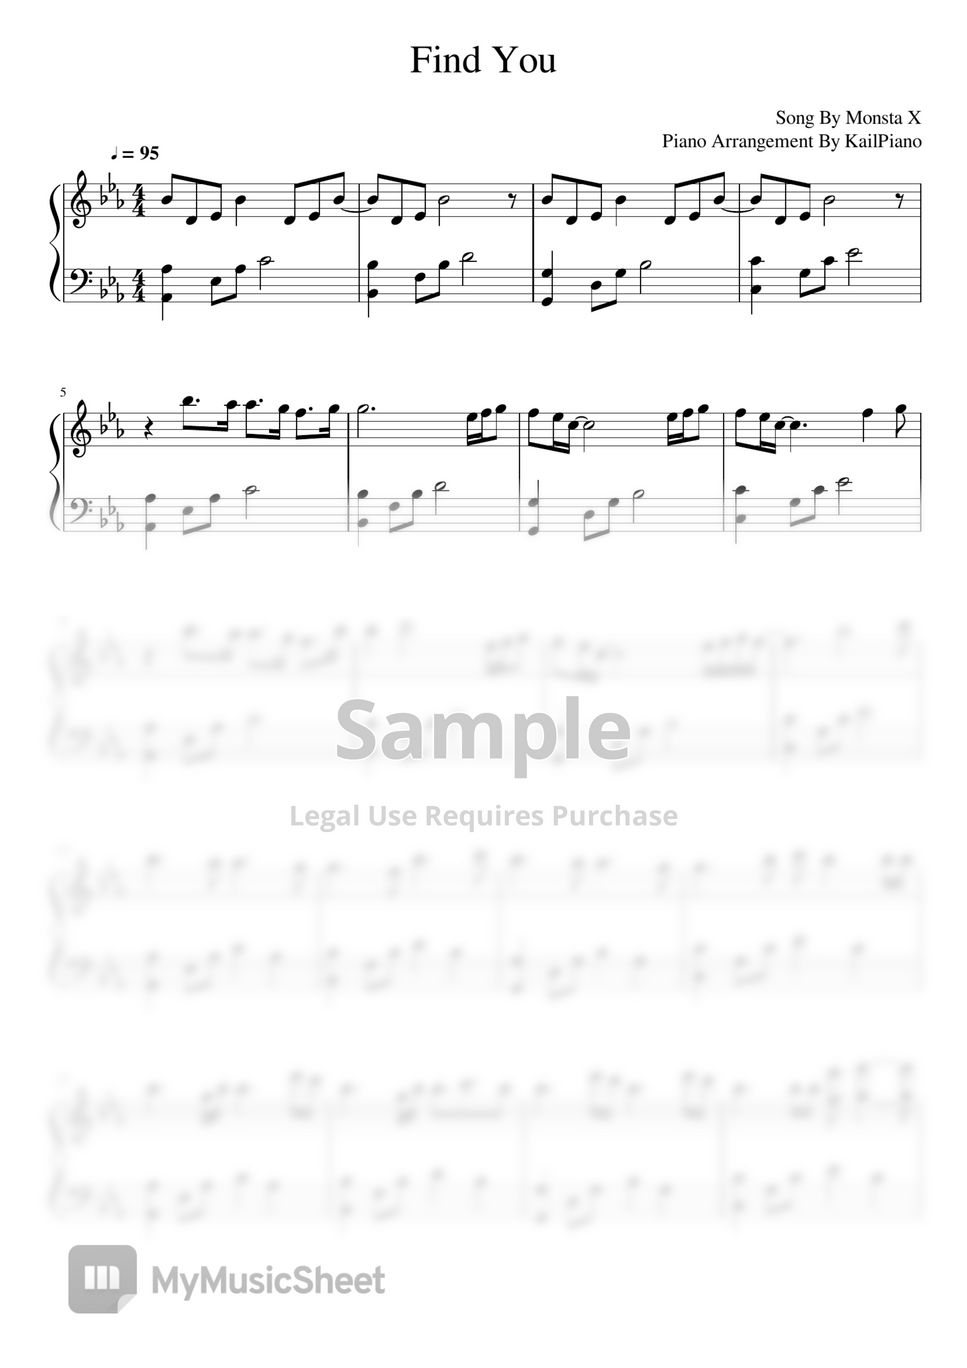 Monsta X - Find You (Piano Sheet) by Kailpiano